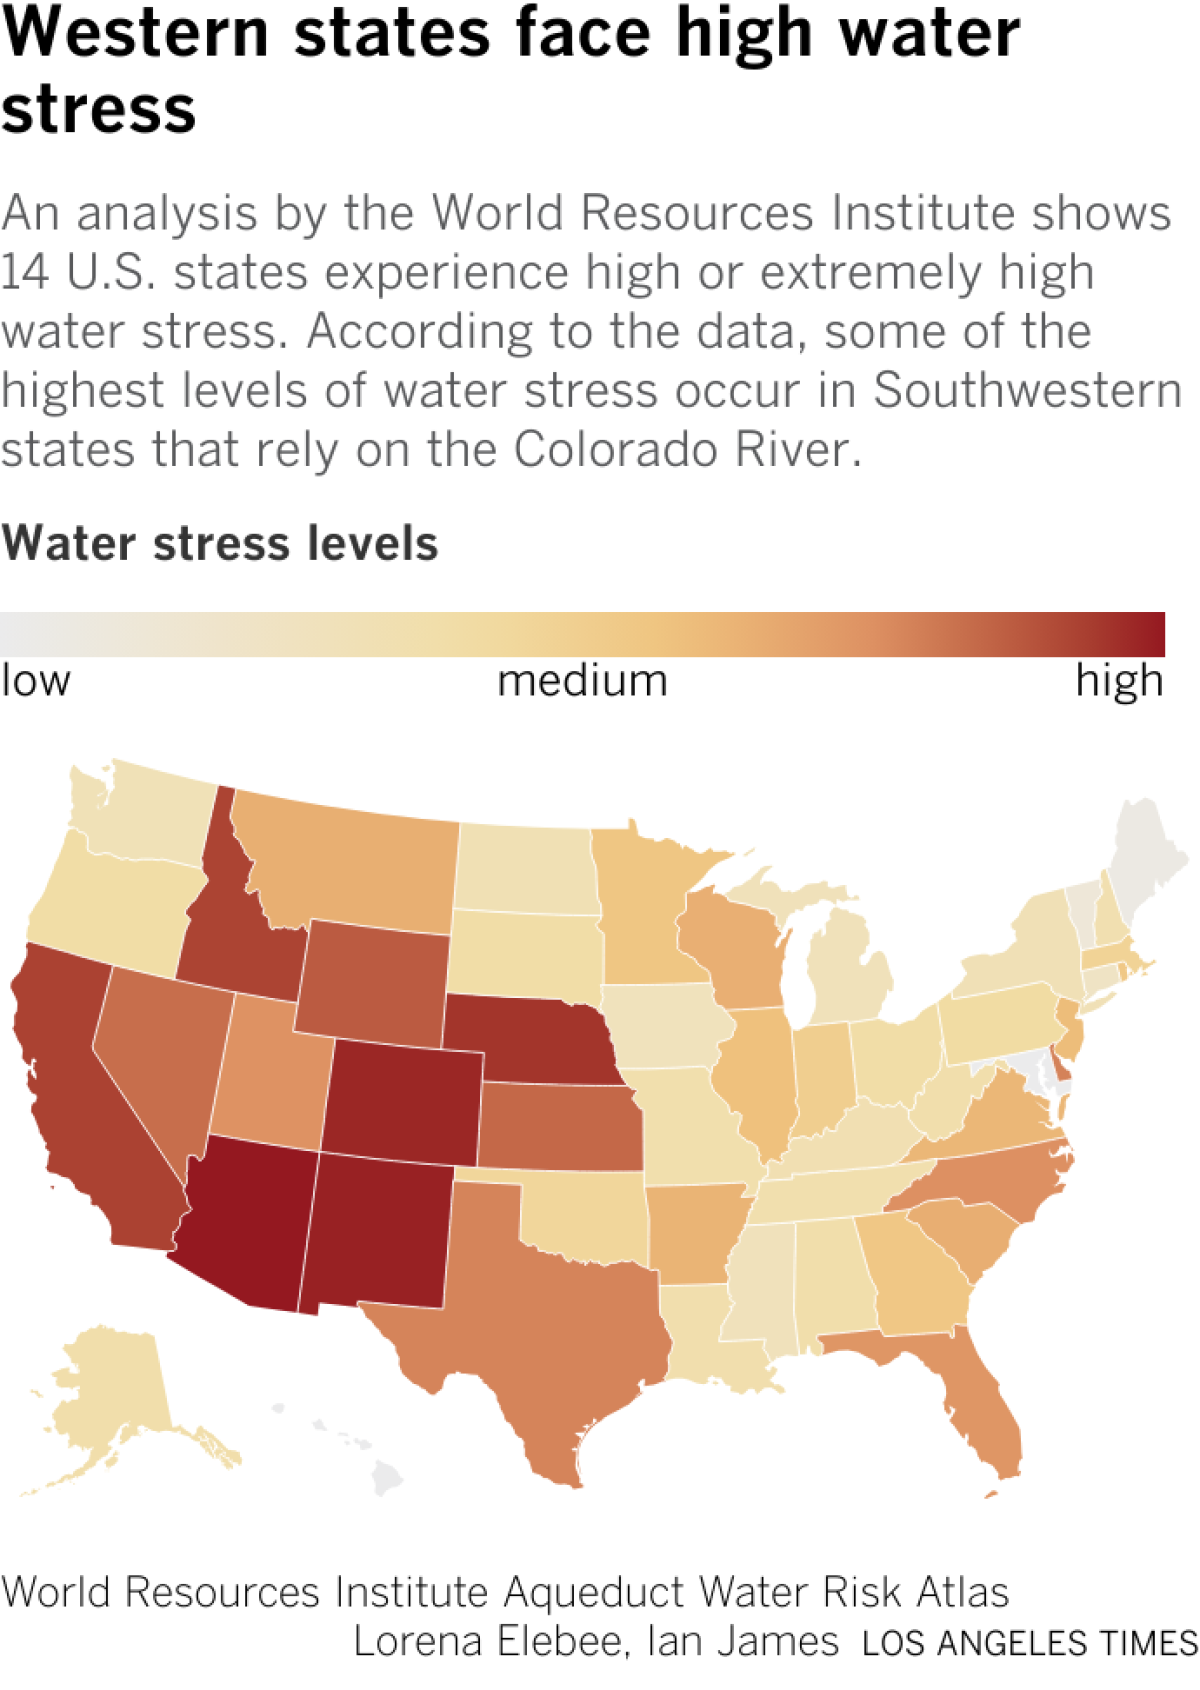 Batı eyaletlerinin şu anda mevcut olandan %40 ila %80 oranında su kullanım koşullarıyla karşı karşıya olduğunu gösteren harita.